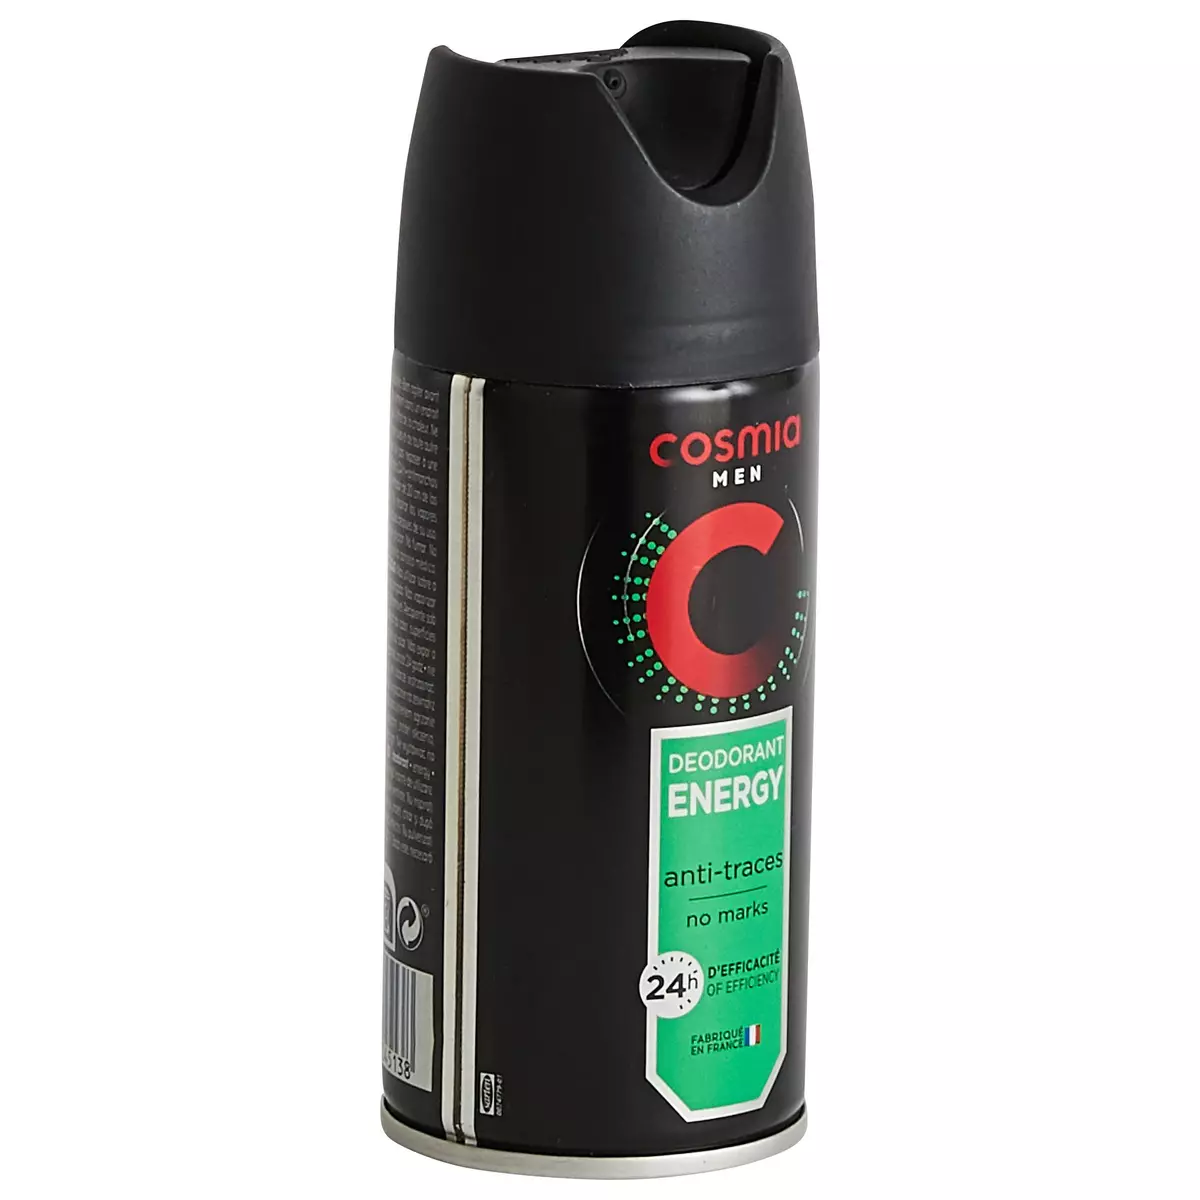 COSMIA MEN Déodorant spray homme 24h énergy anti-traces 150ml